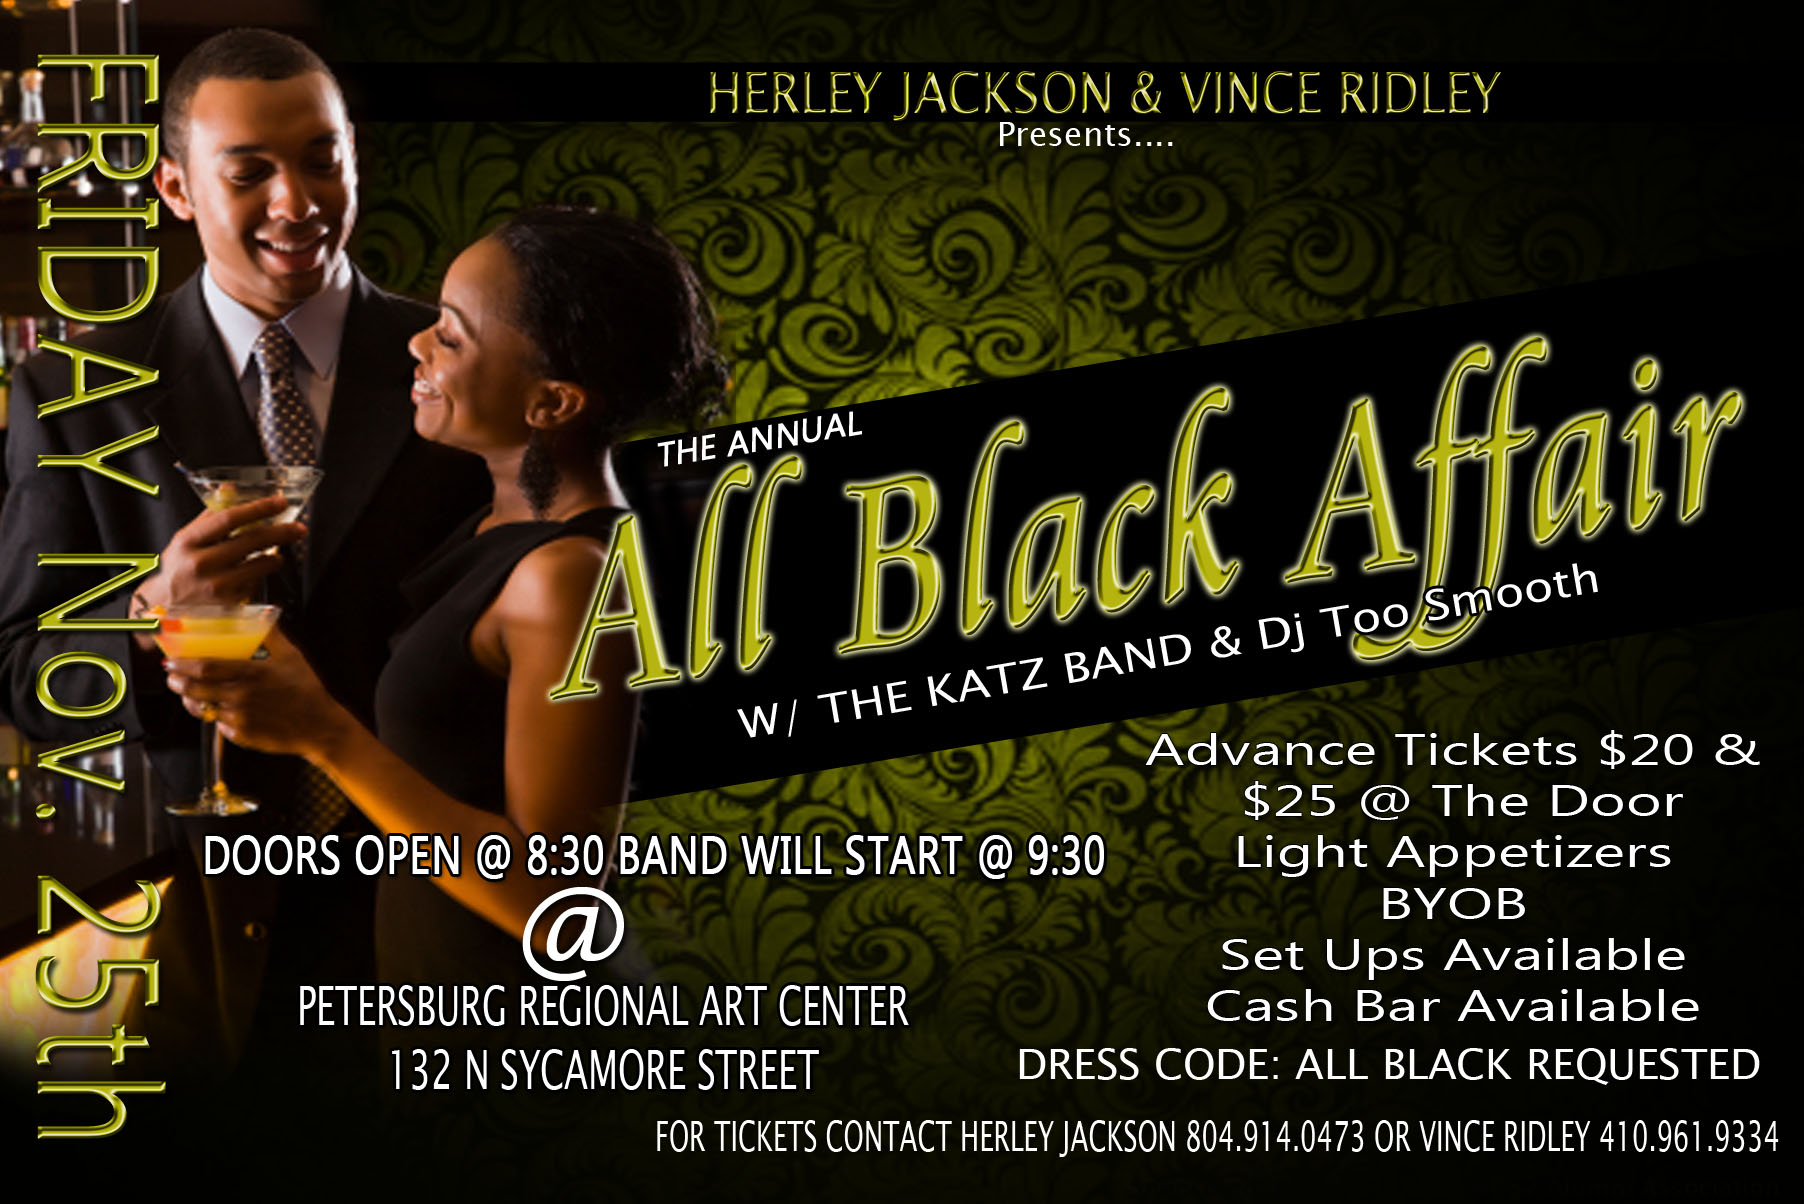 The Annual All Black Affair Tickets, Fri, Nov 25, 2011 at 830 PM